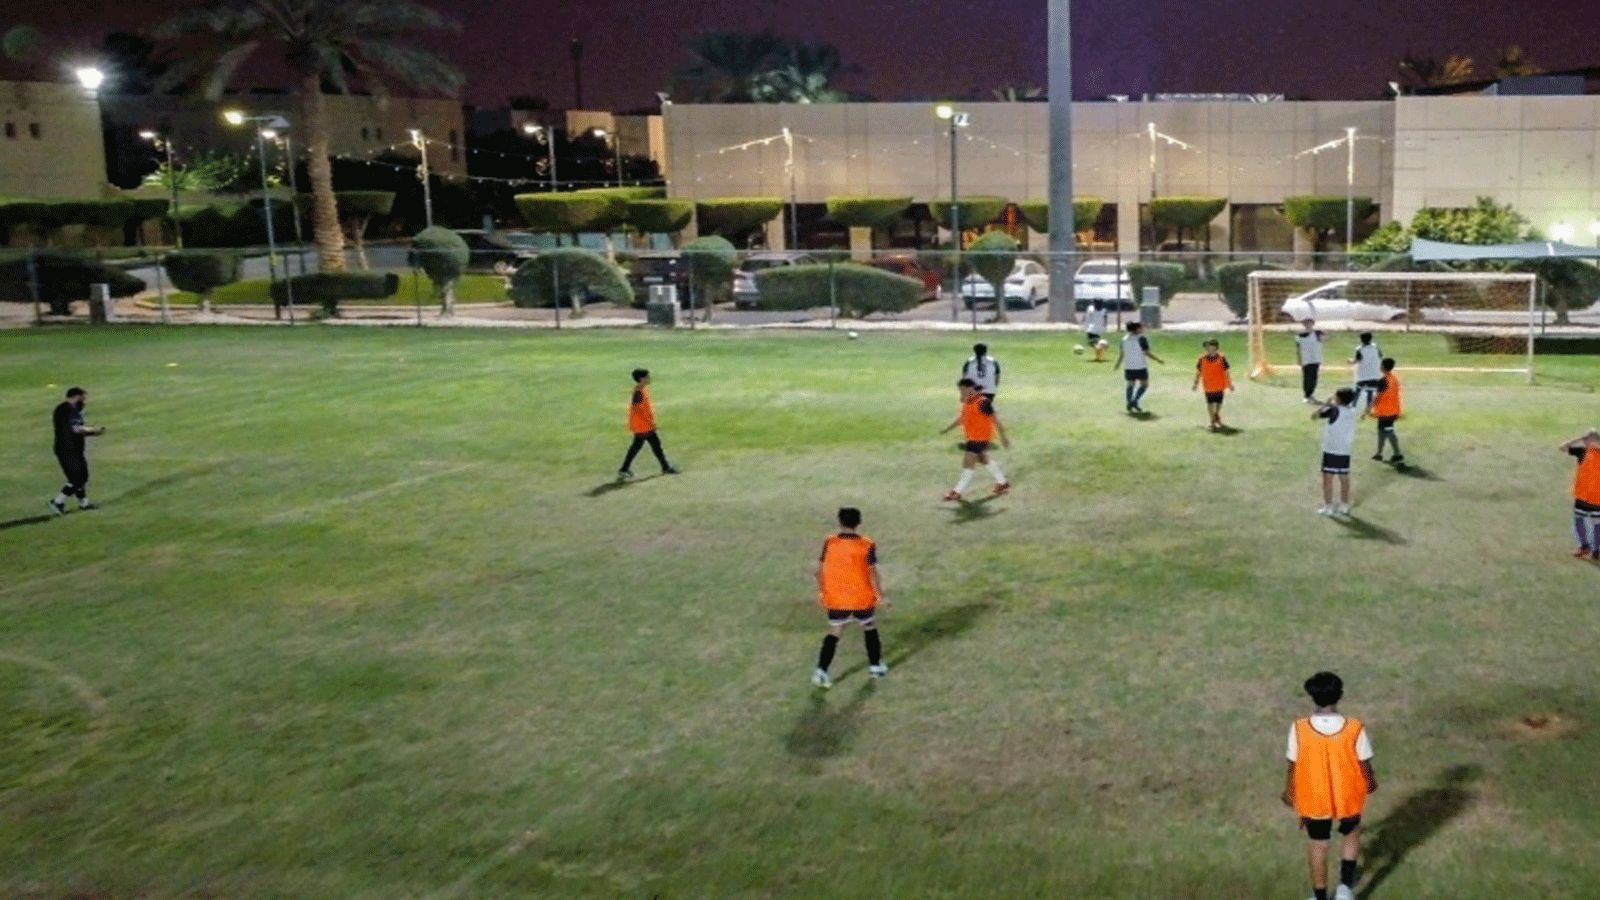 حصة تدريب على كرة القدم في اطار الاكاديمية الفرنسية في الرياض في 13 تشرين الثاني/نوفمبر 2022 